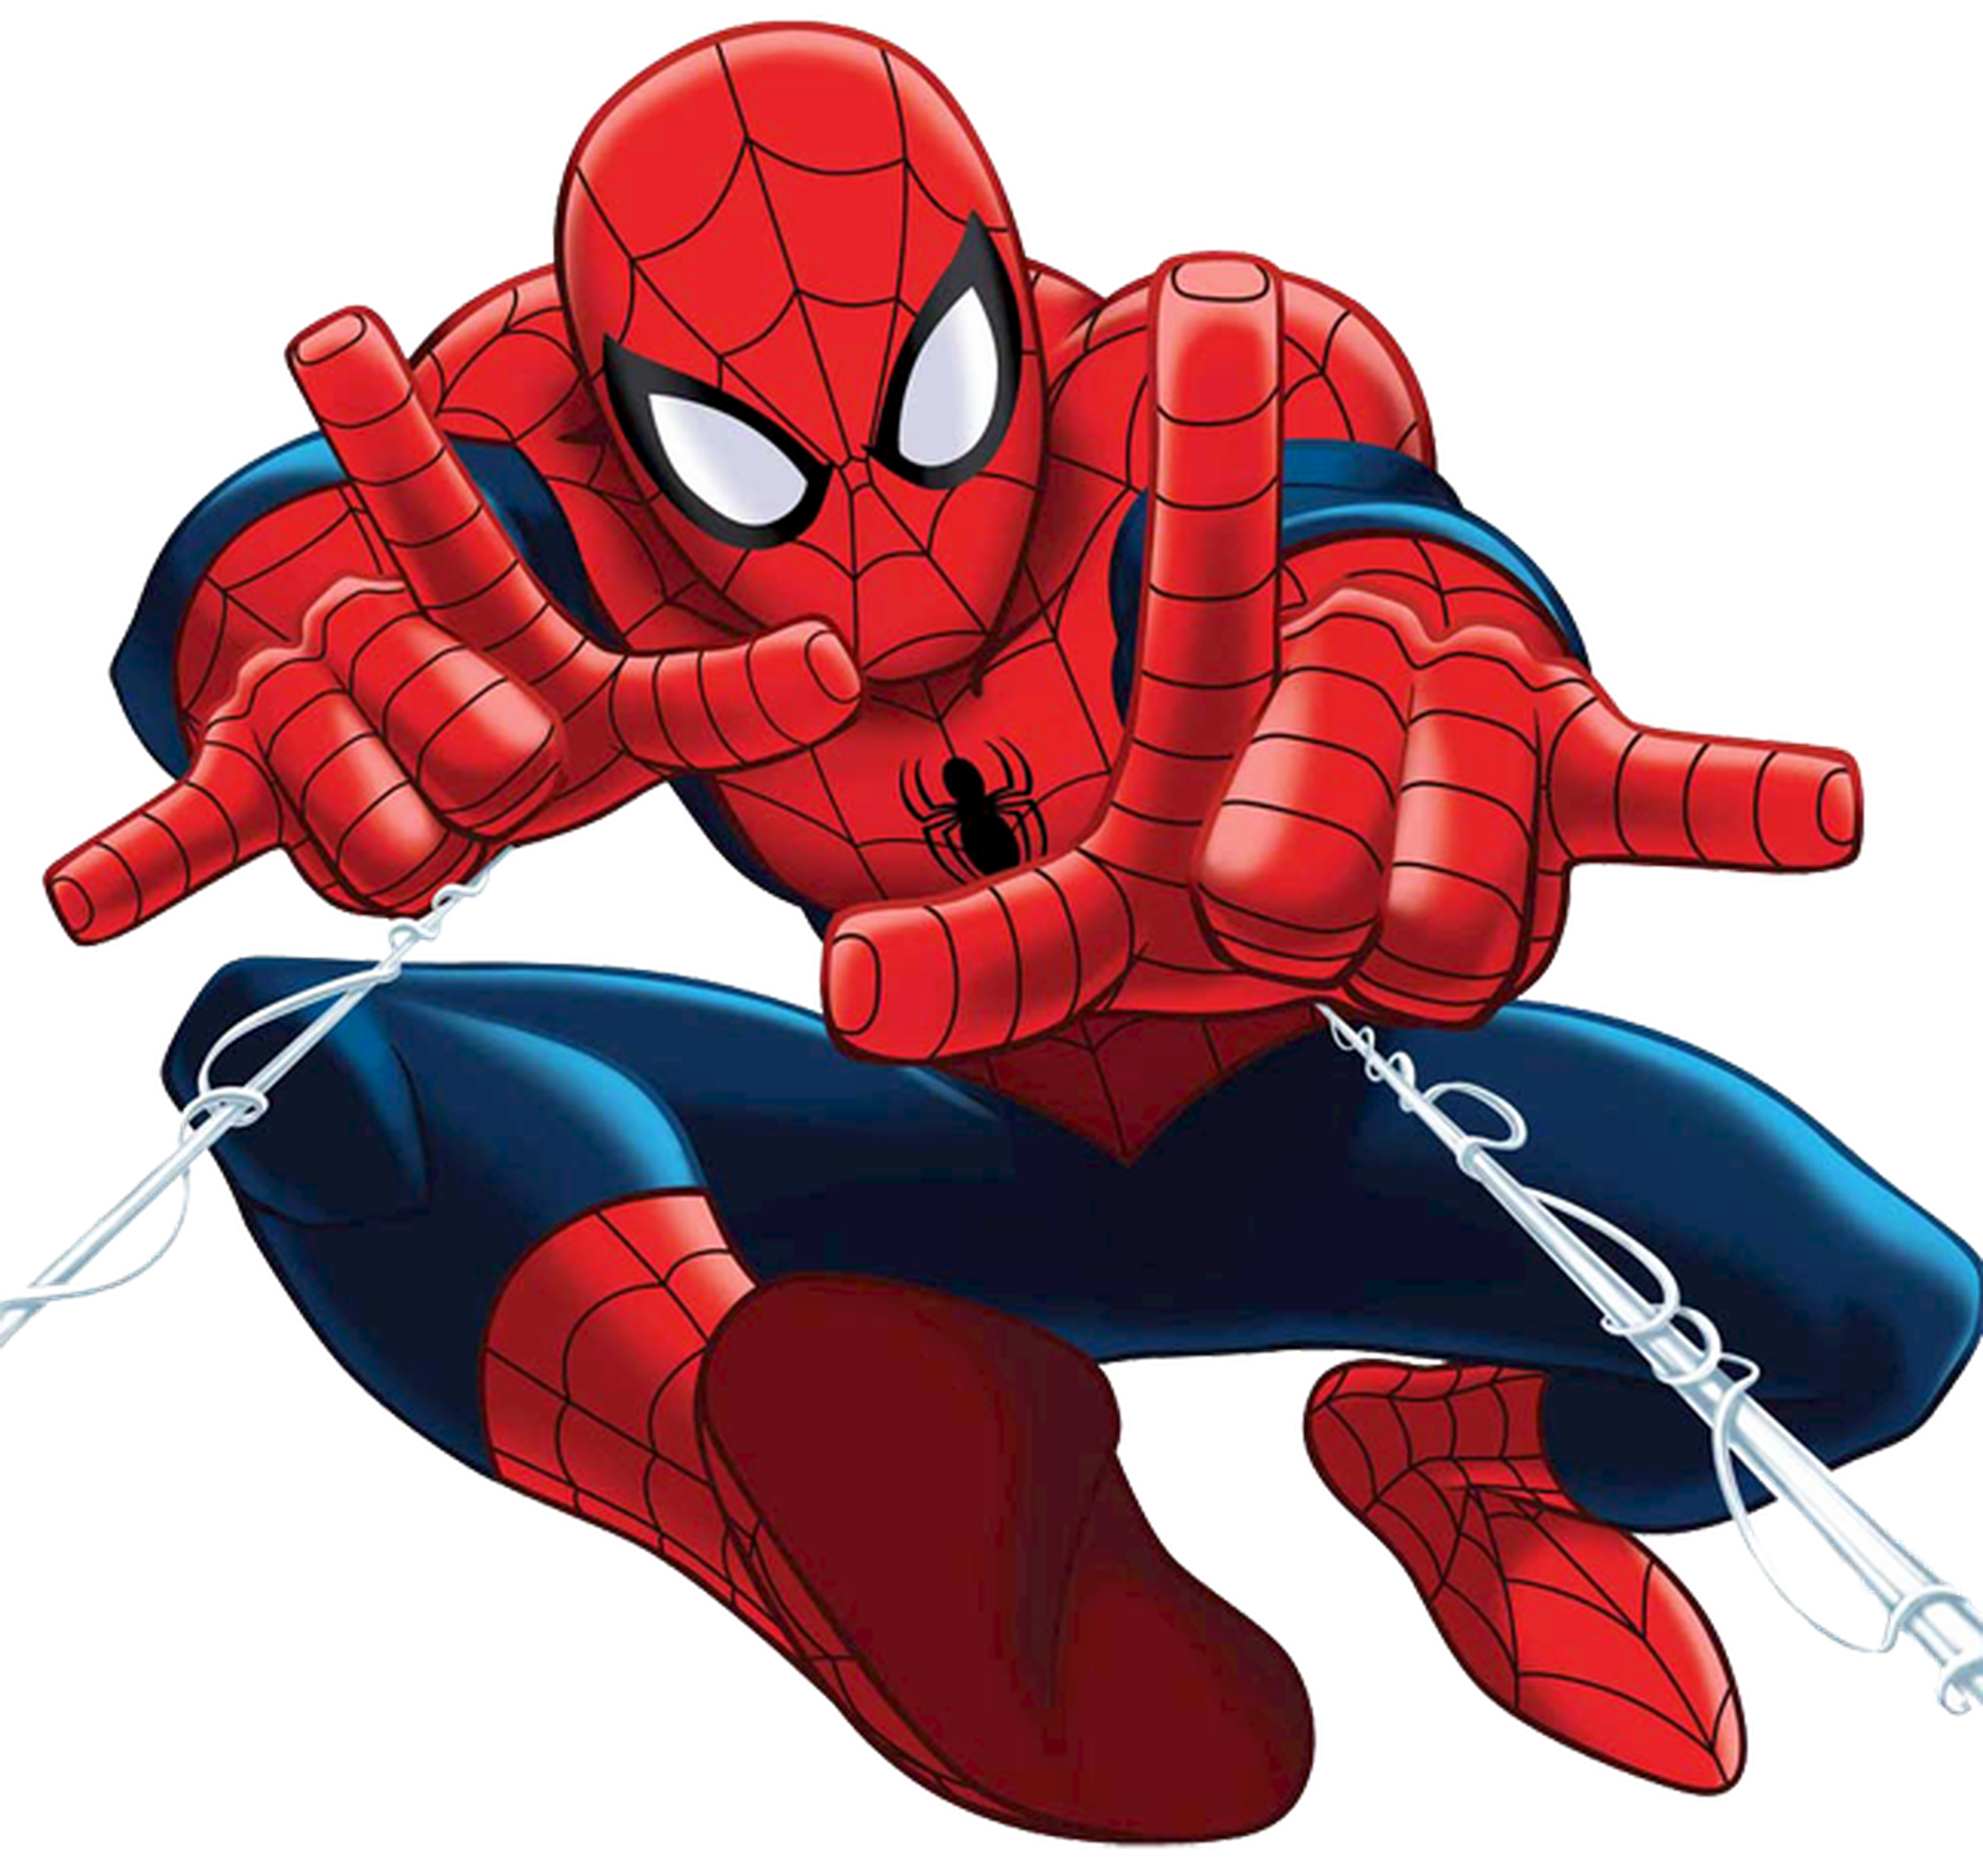 Spider-Man tendrá una versión animada de los creadores de La LEGO película